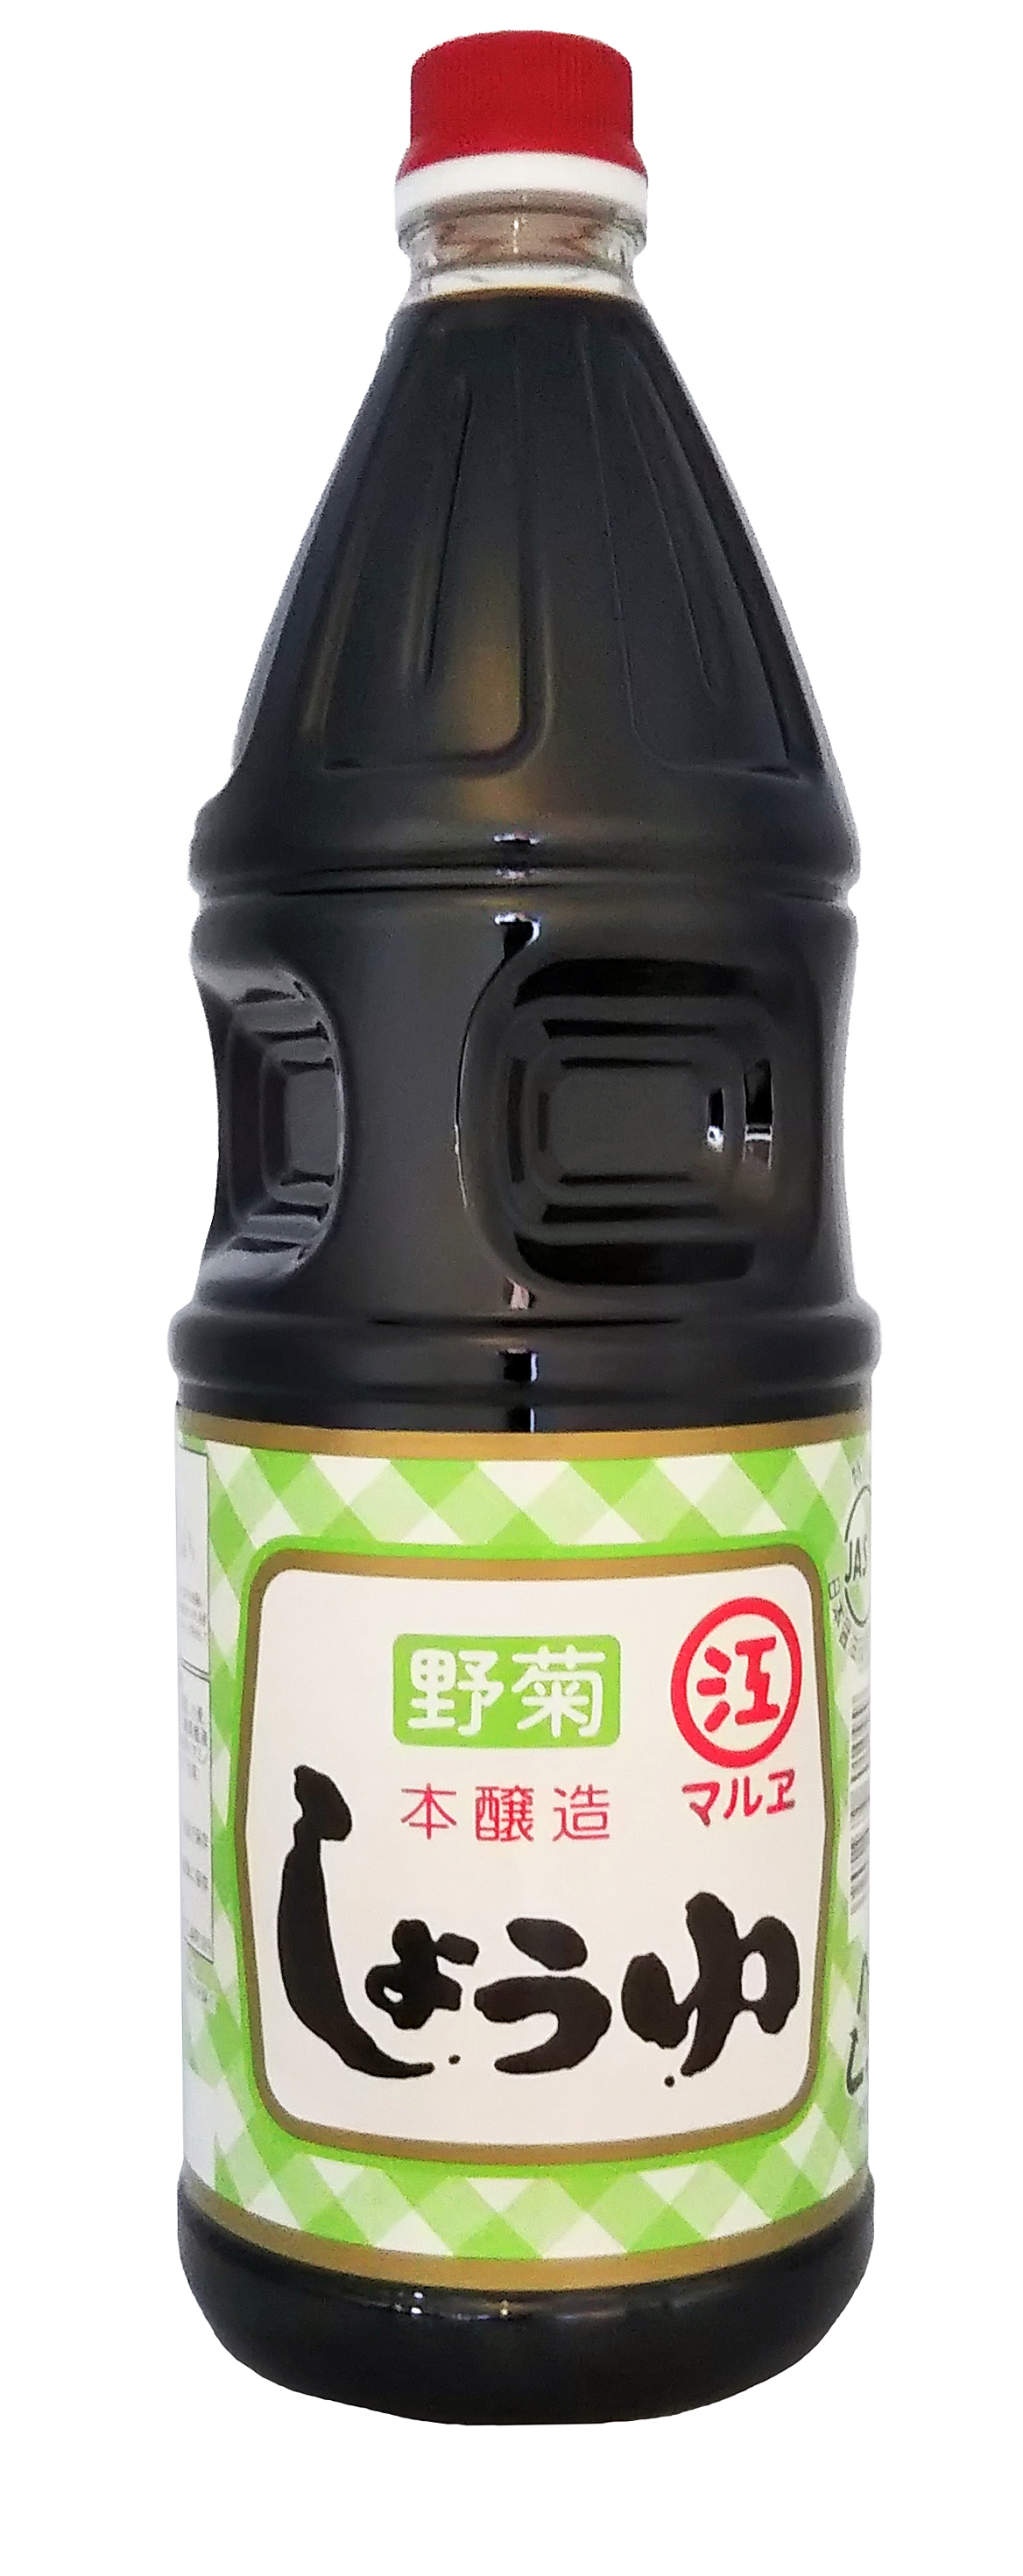 マルヱ醤油 野菊 ペットボトル 1.8L×1本 濃口醤油の商品画像